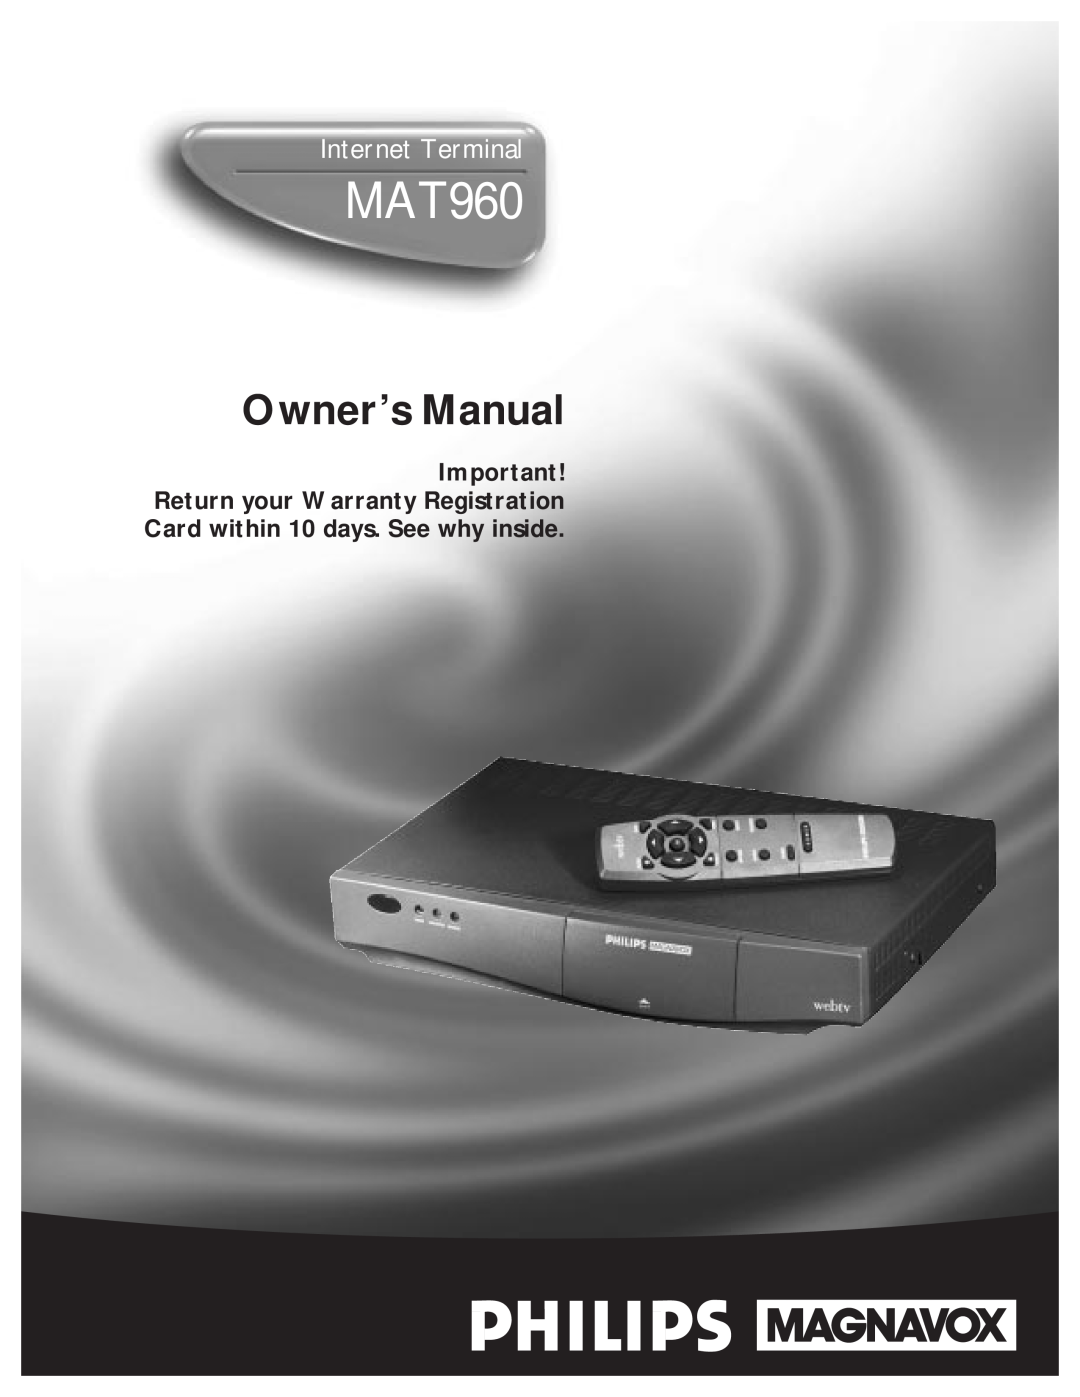 Philips MAT960 manual Owner’s Manual, Internet Terminal 